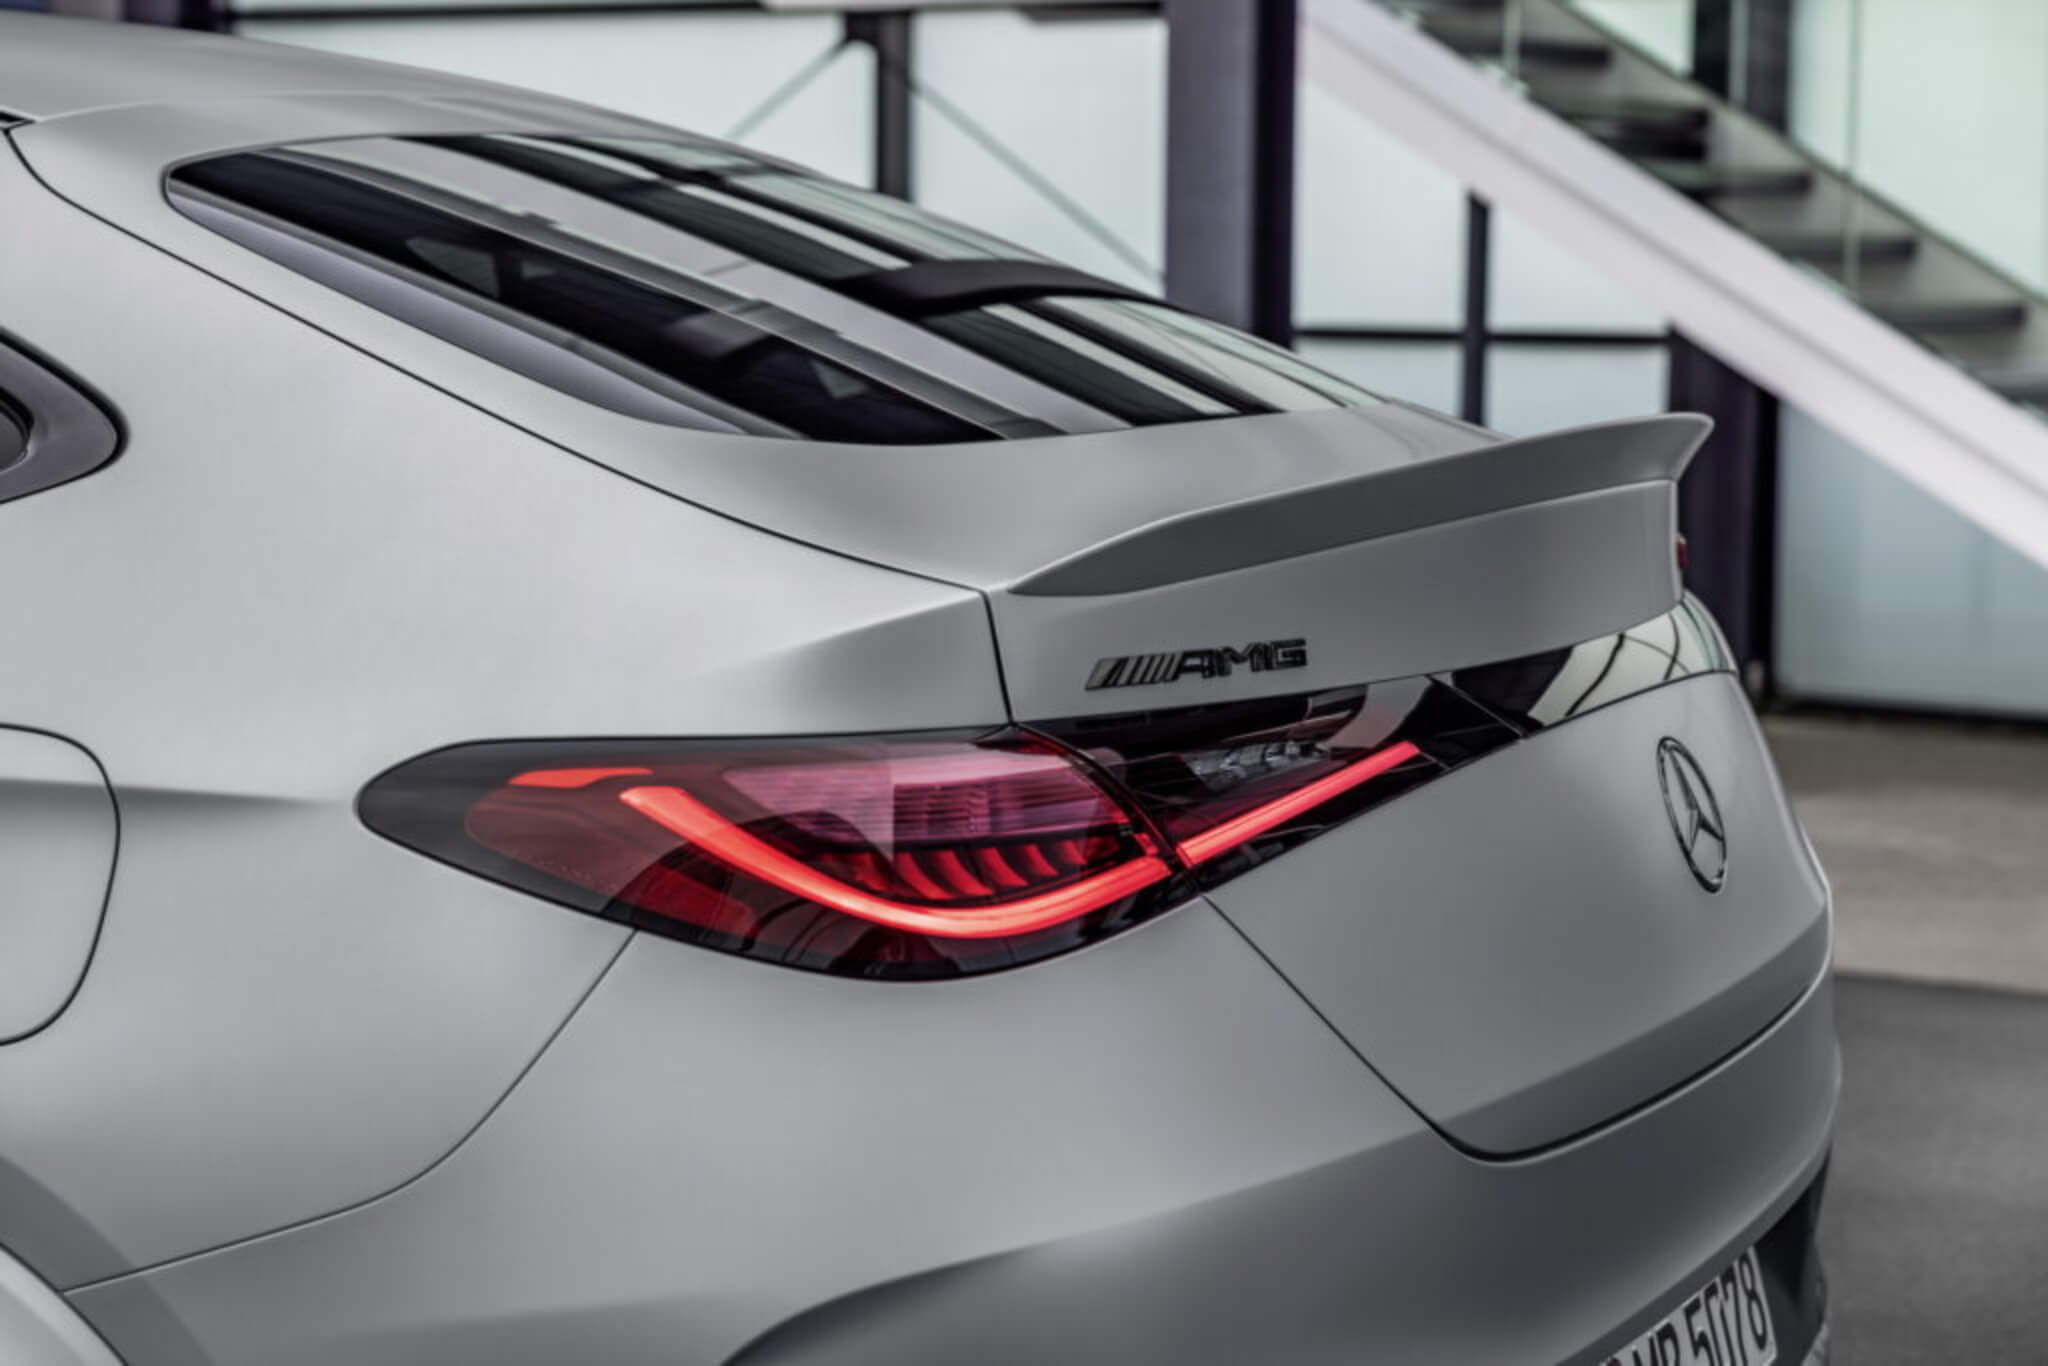 Mercedes-AMG GLC 63 S E Performance Coupé spoiler